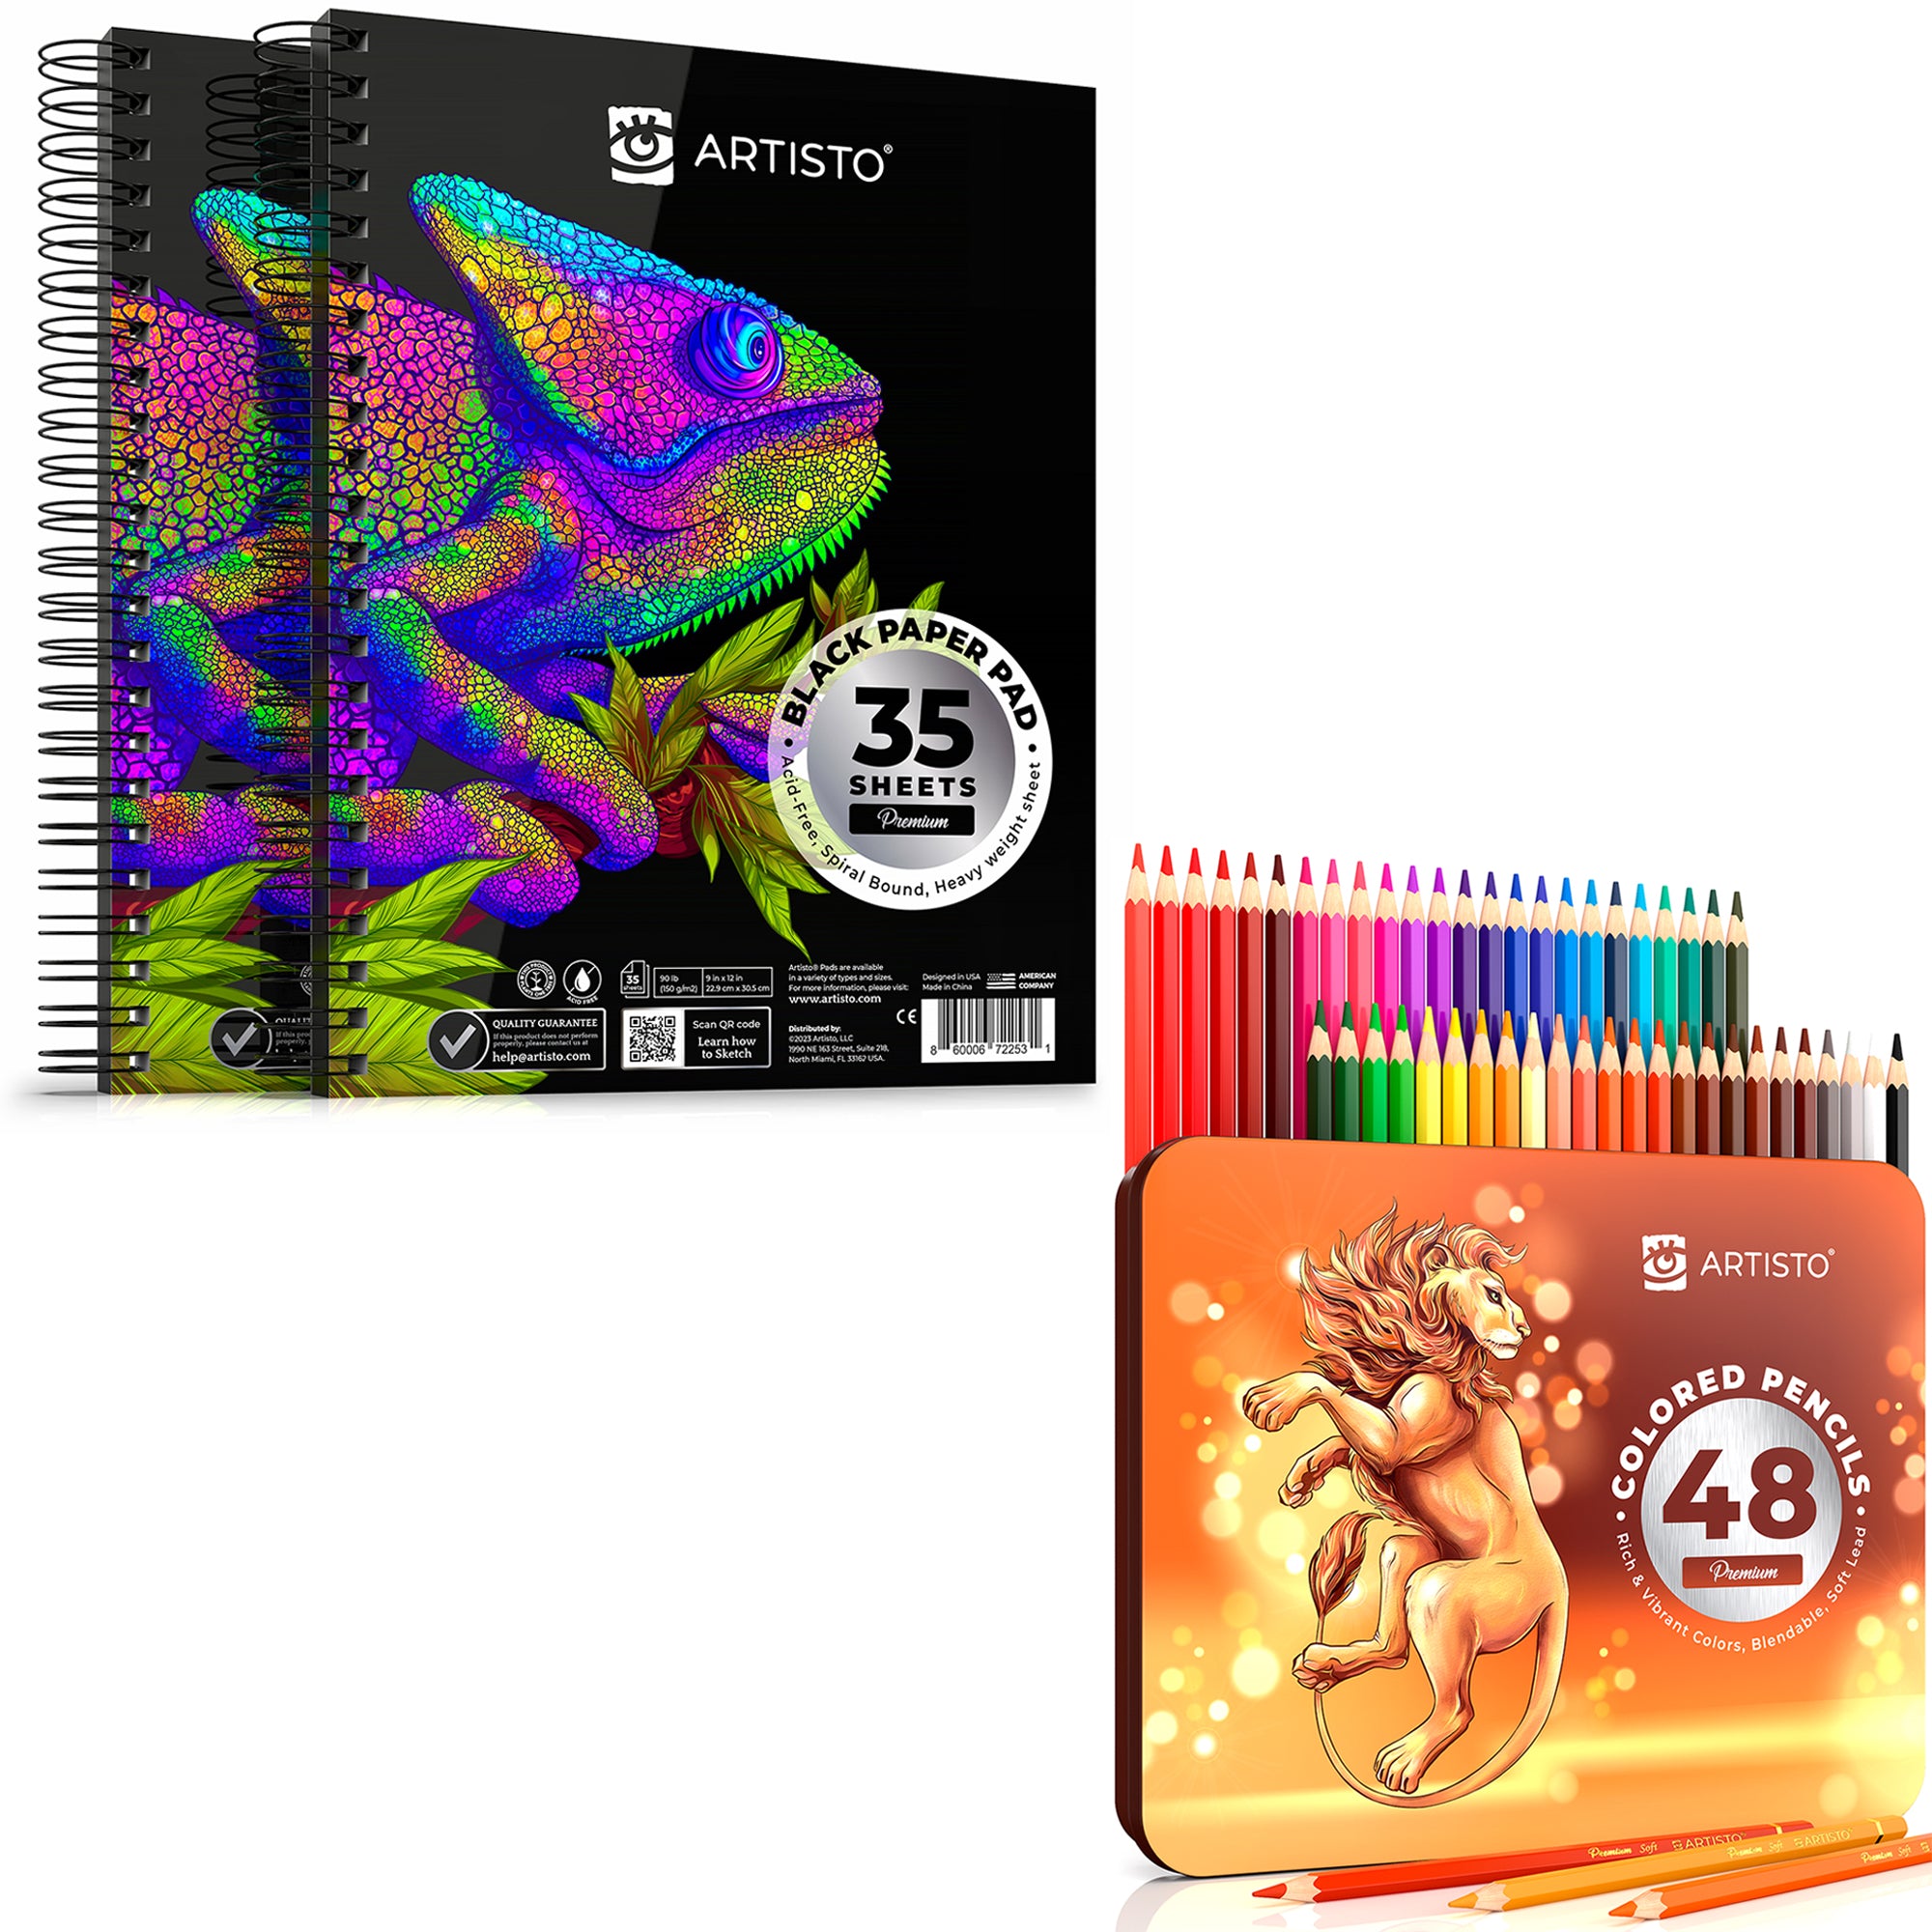 ARTISTO Black Paper Pads 9 x 12 & Colored Pencils (48 colors) Bundle